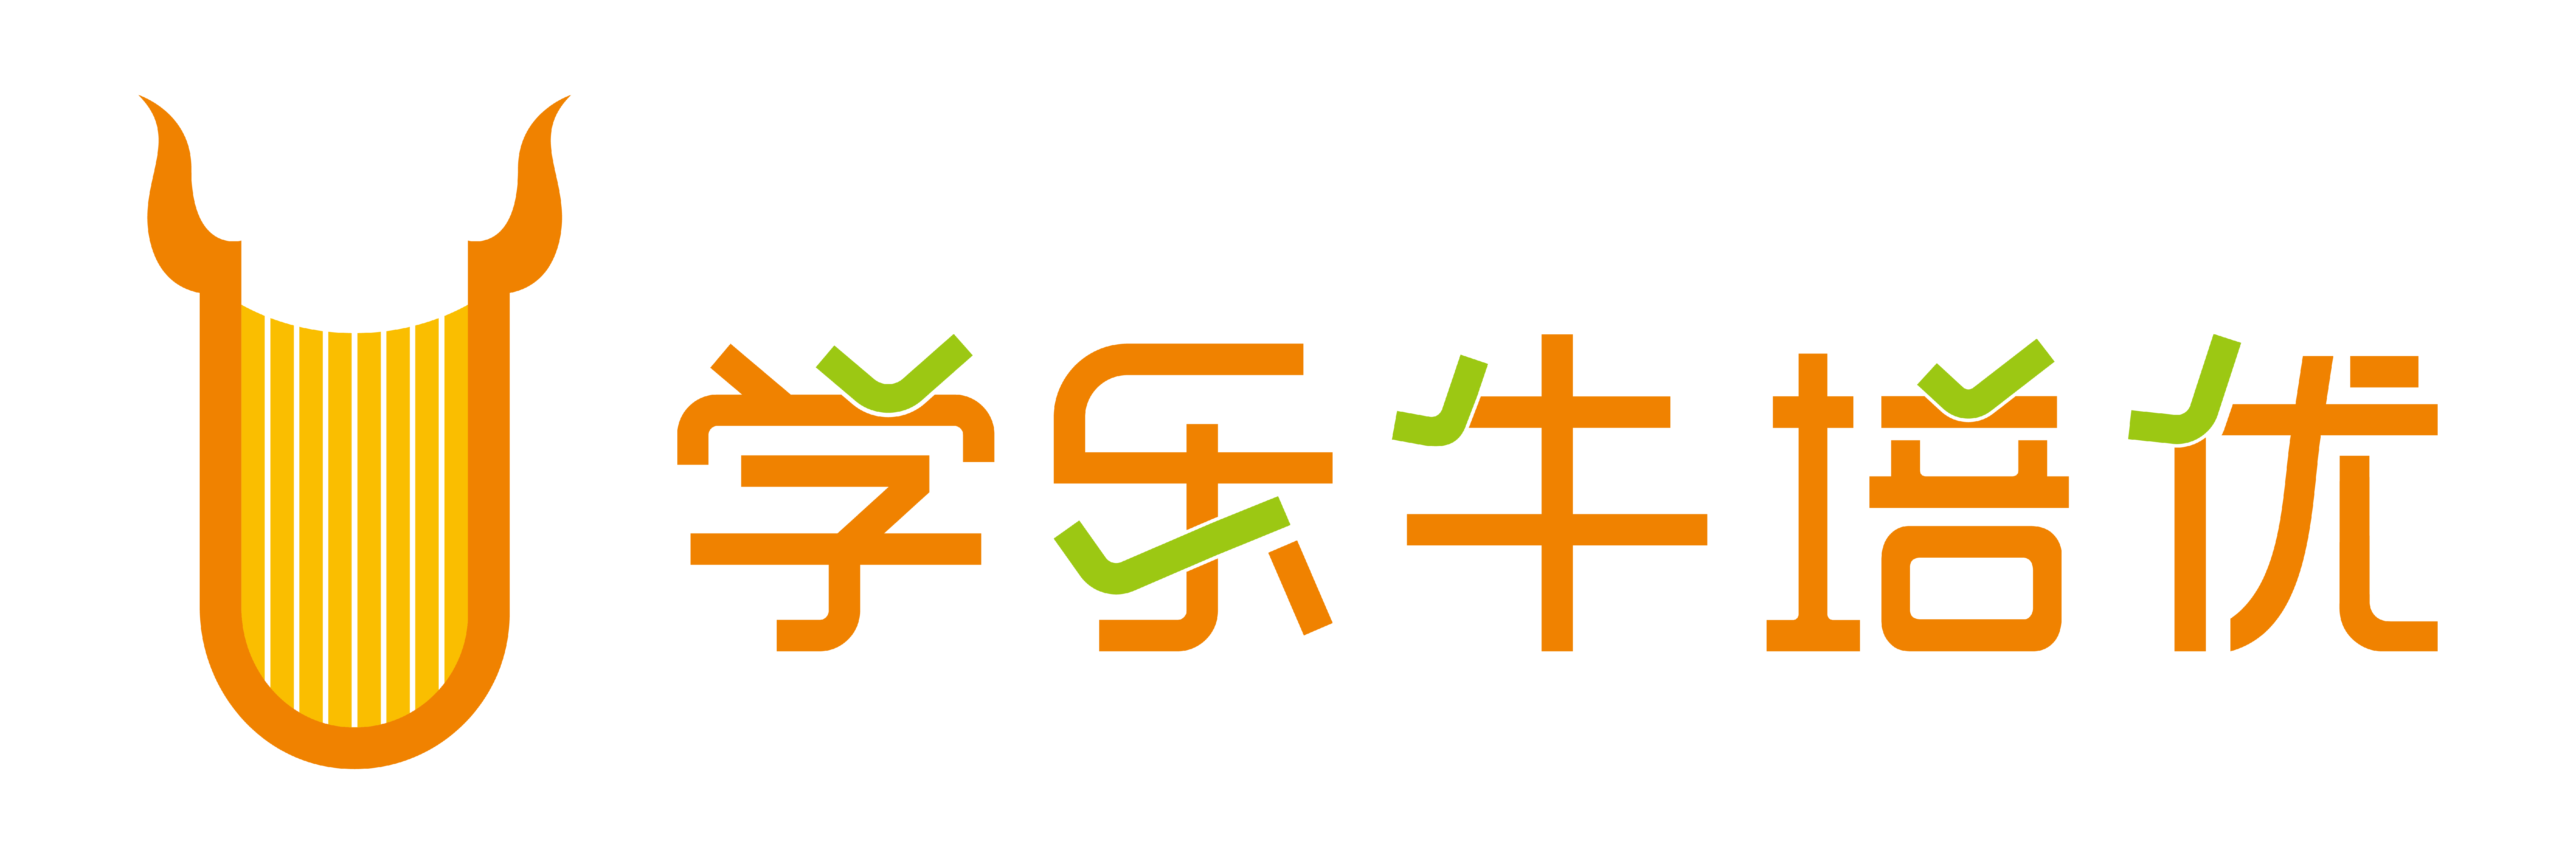 中文横式组合-01.png